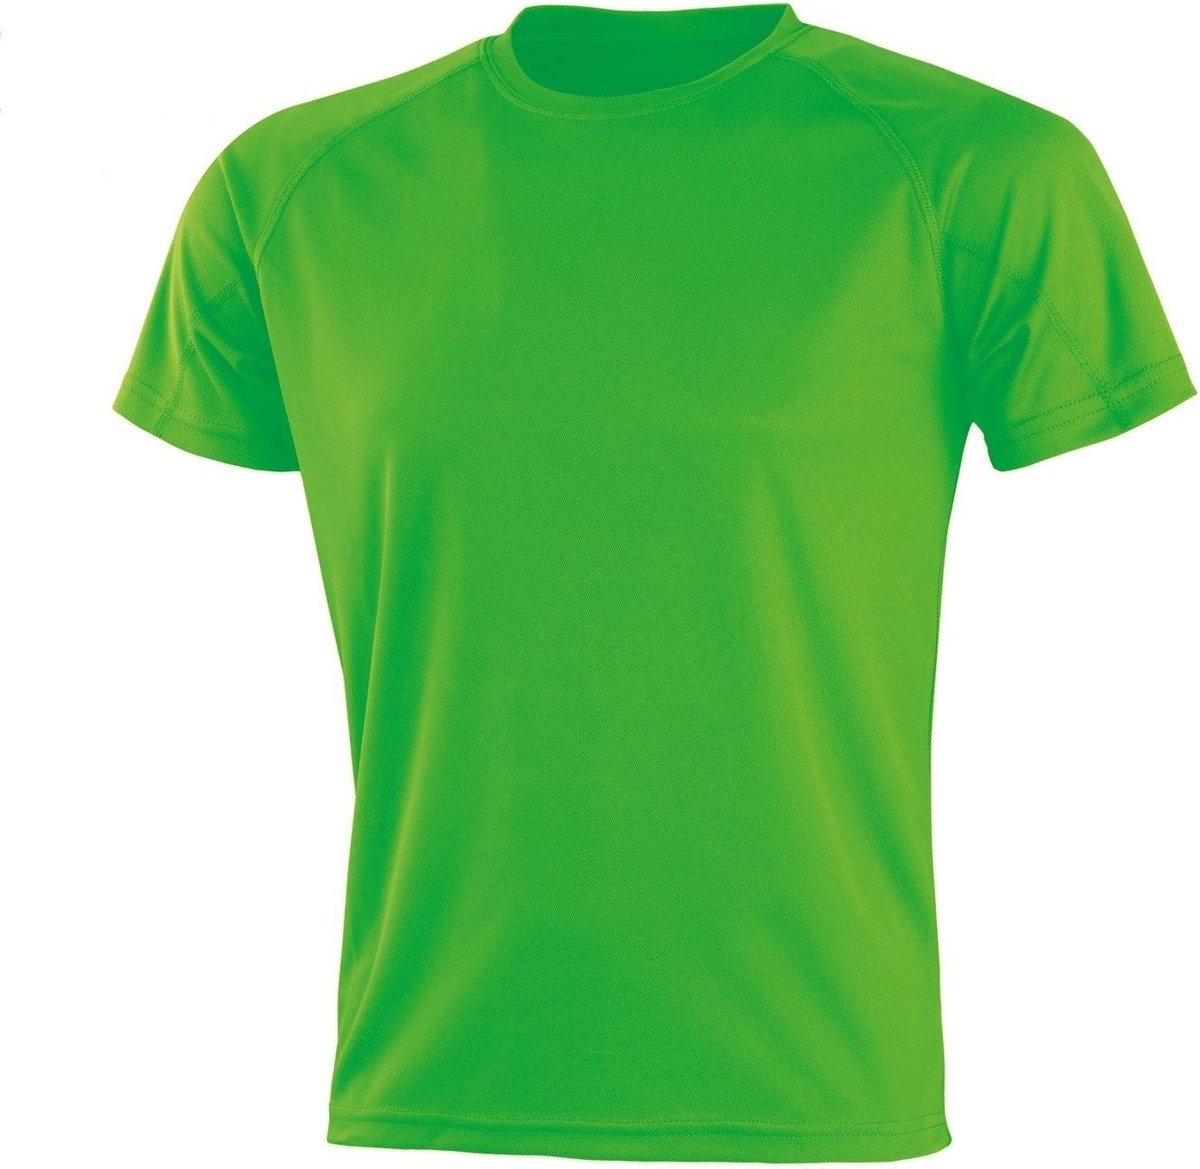 Senvi Sports Performance T-Shirt - Fluoriserend Groen - 3XL - Unisex